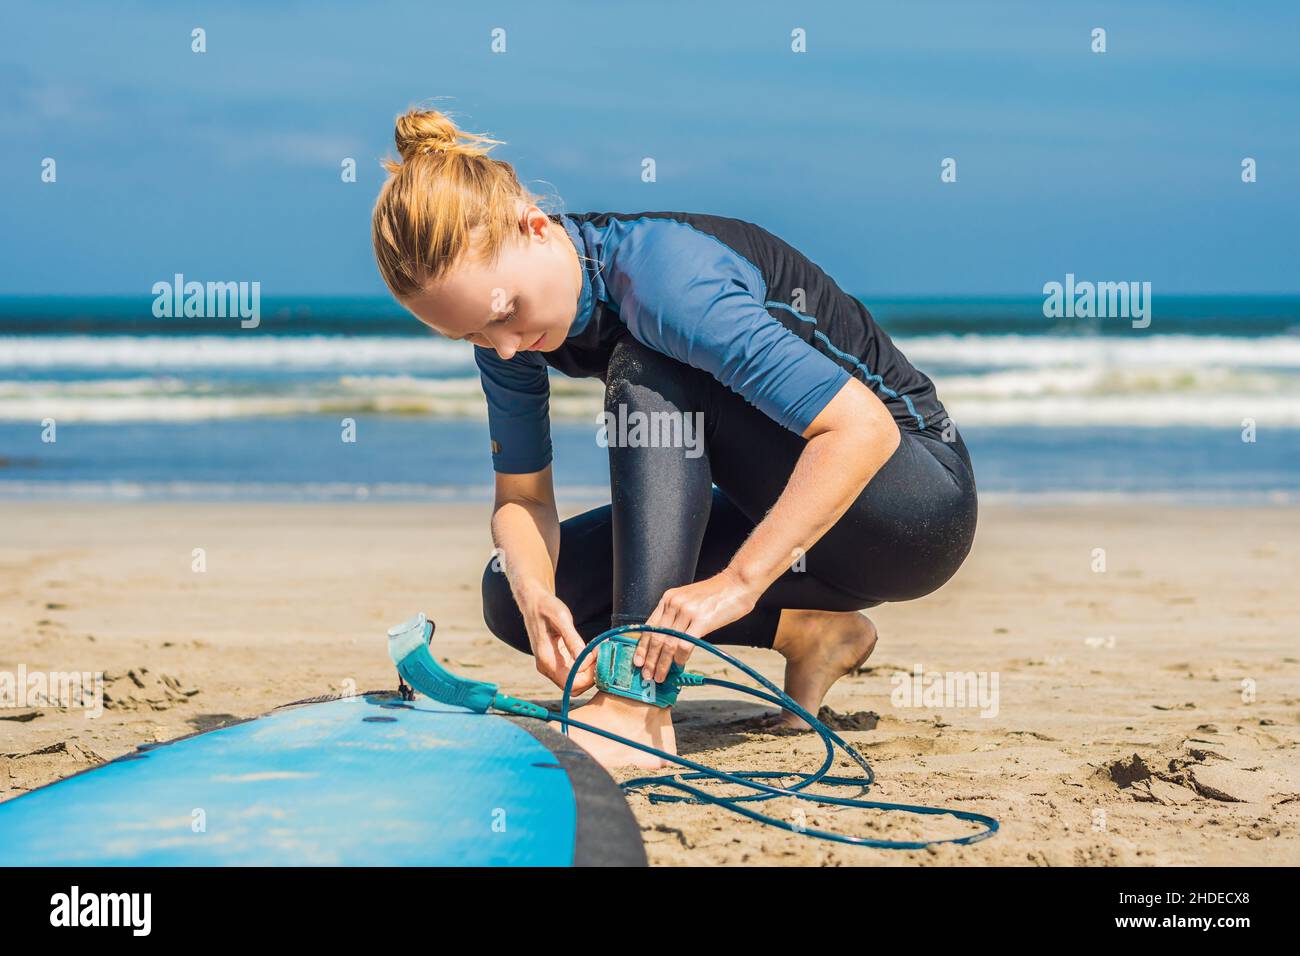 Konzept für Sommerzeit und aktive Erholung. Die junge Surferin, eine Anfängerin, nimmt die Leine über die Beine, geht auf großen barral-Wellen auf dem Ozean surfen, dressed in Stockfoto